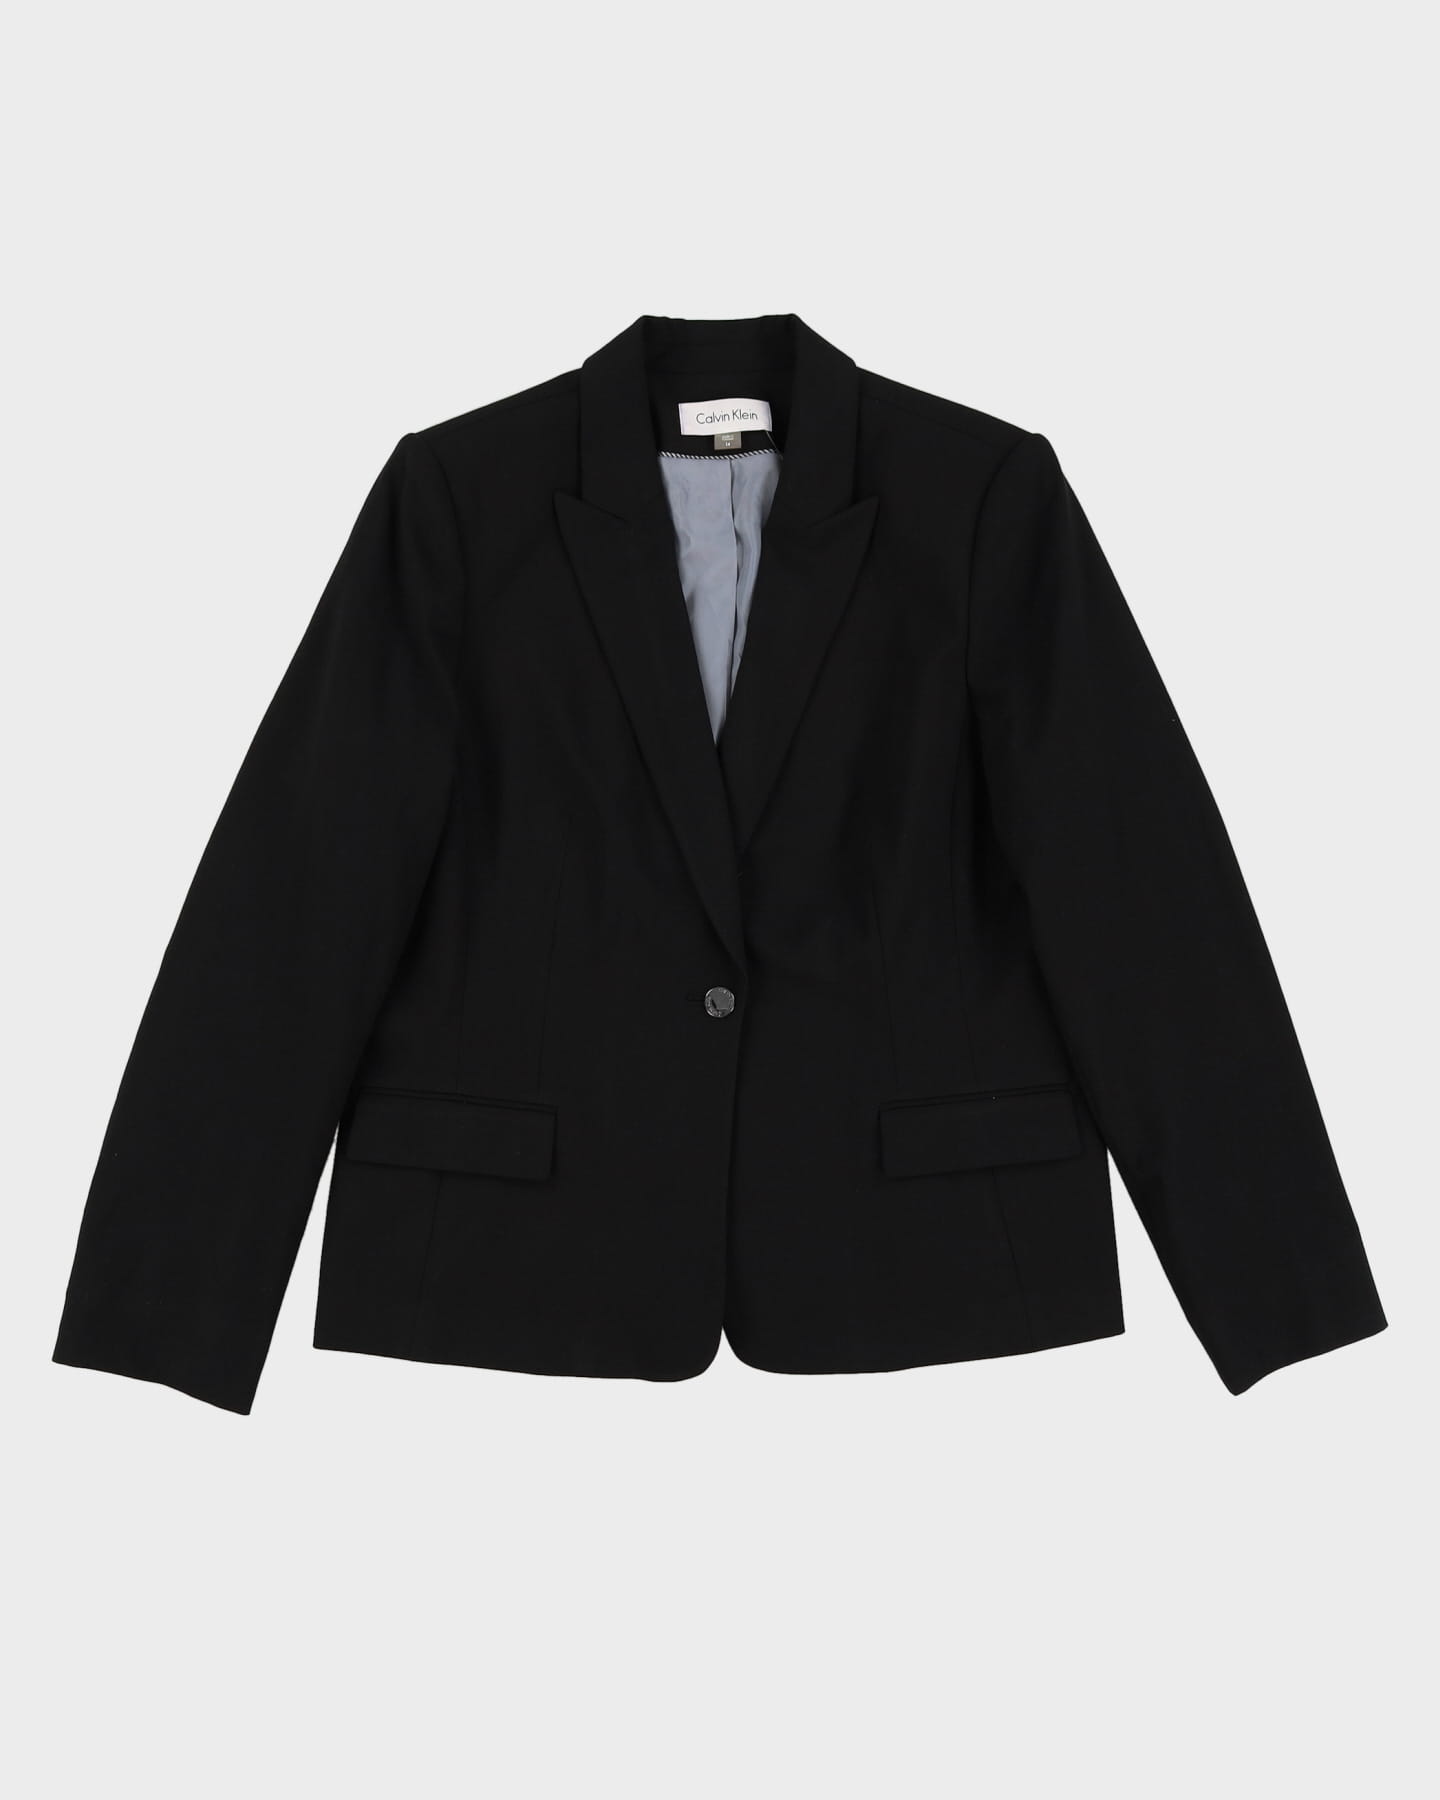 Calvin Klein Black Blazer Style Jacket - M